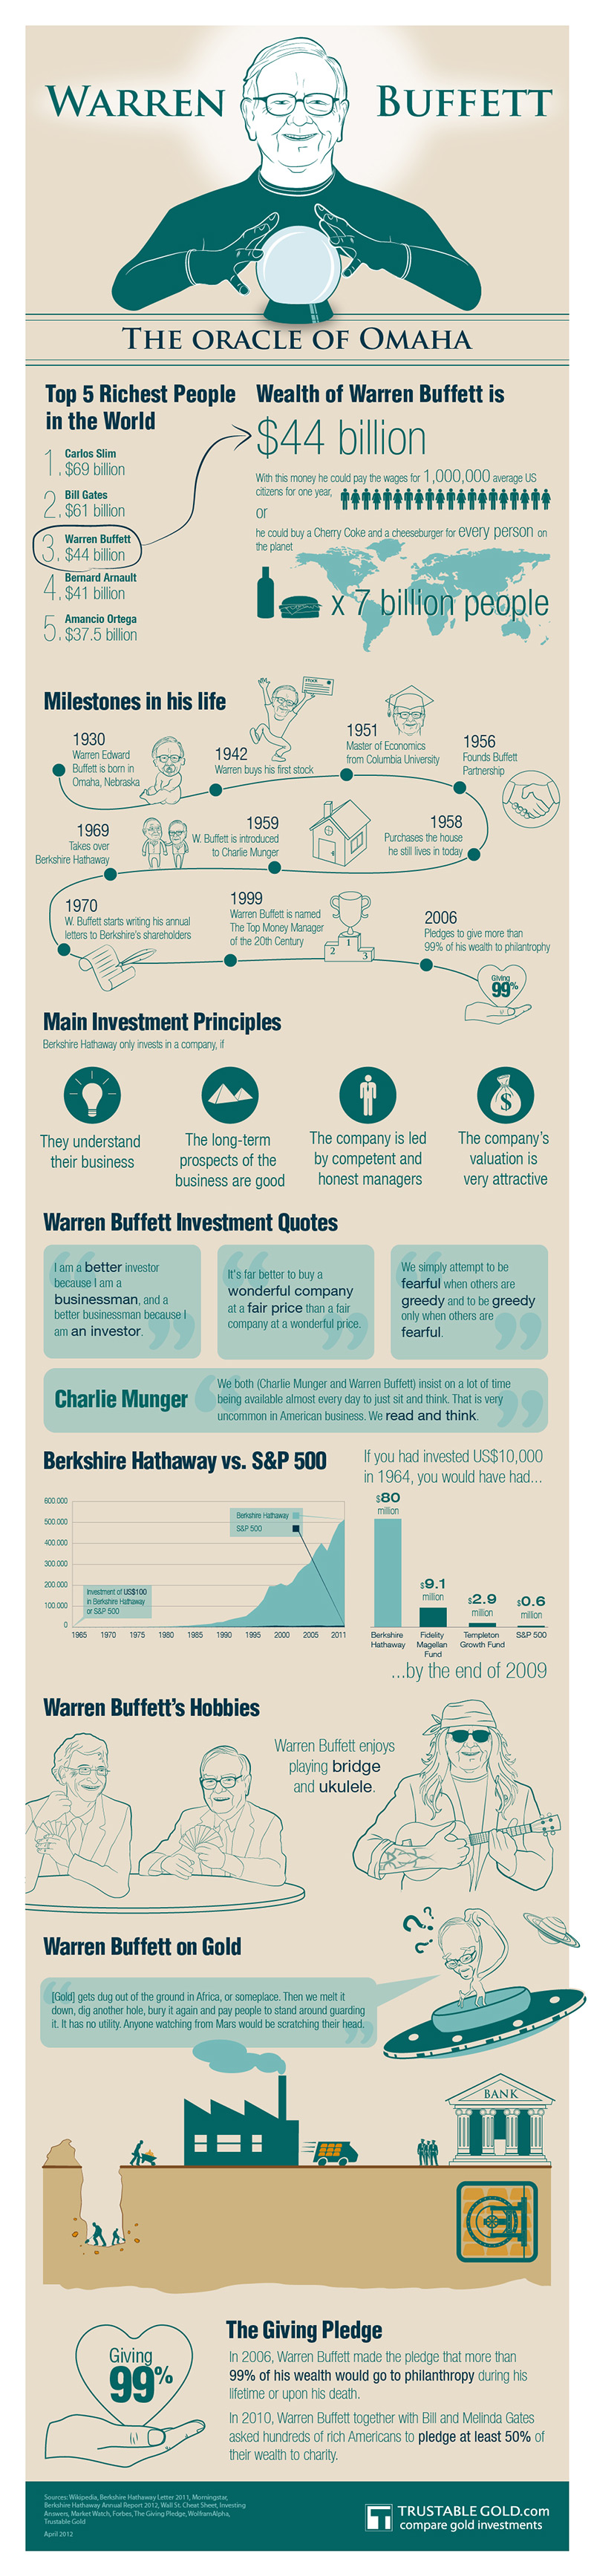 warren-buffett-infographic.jpg